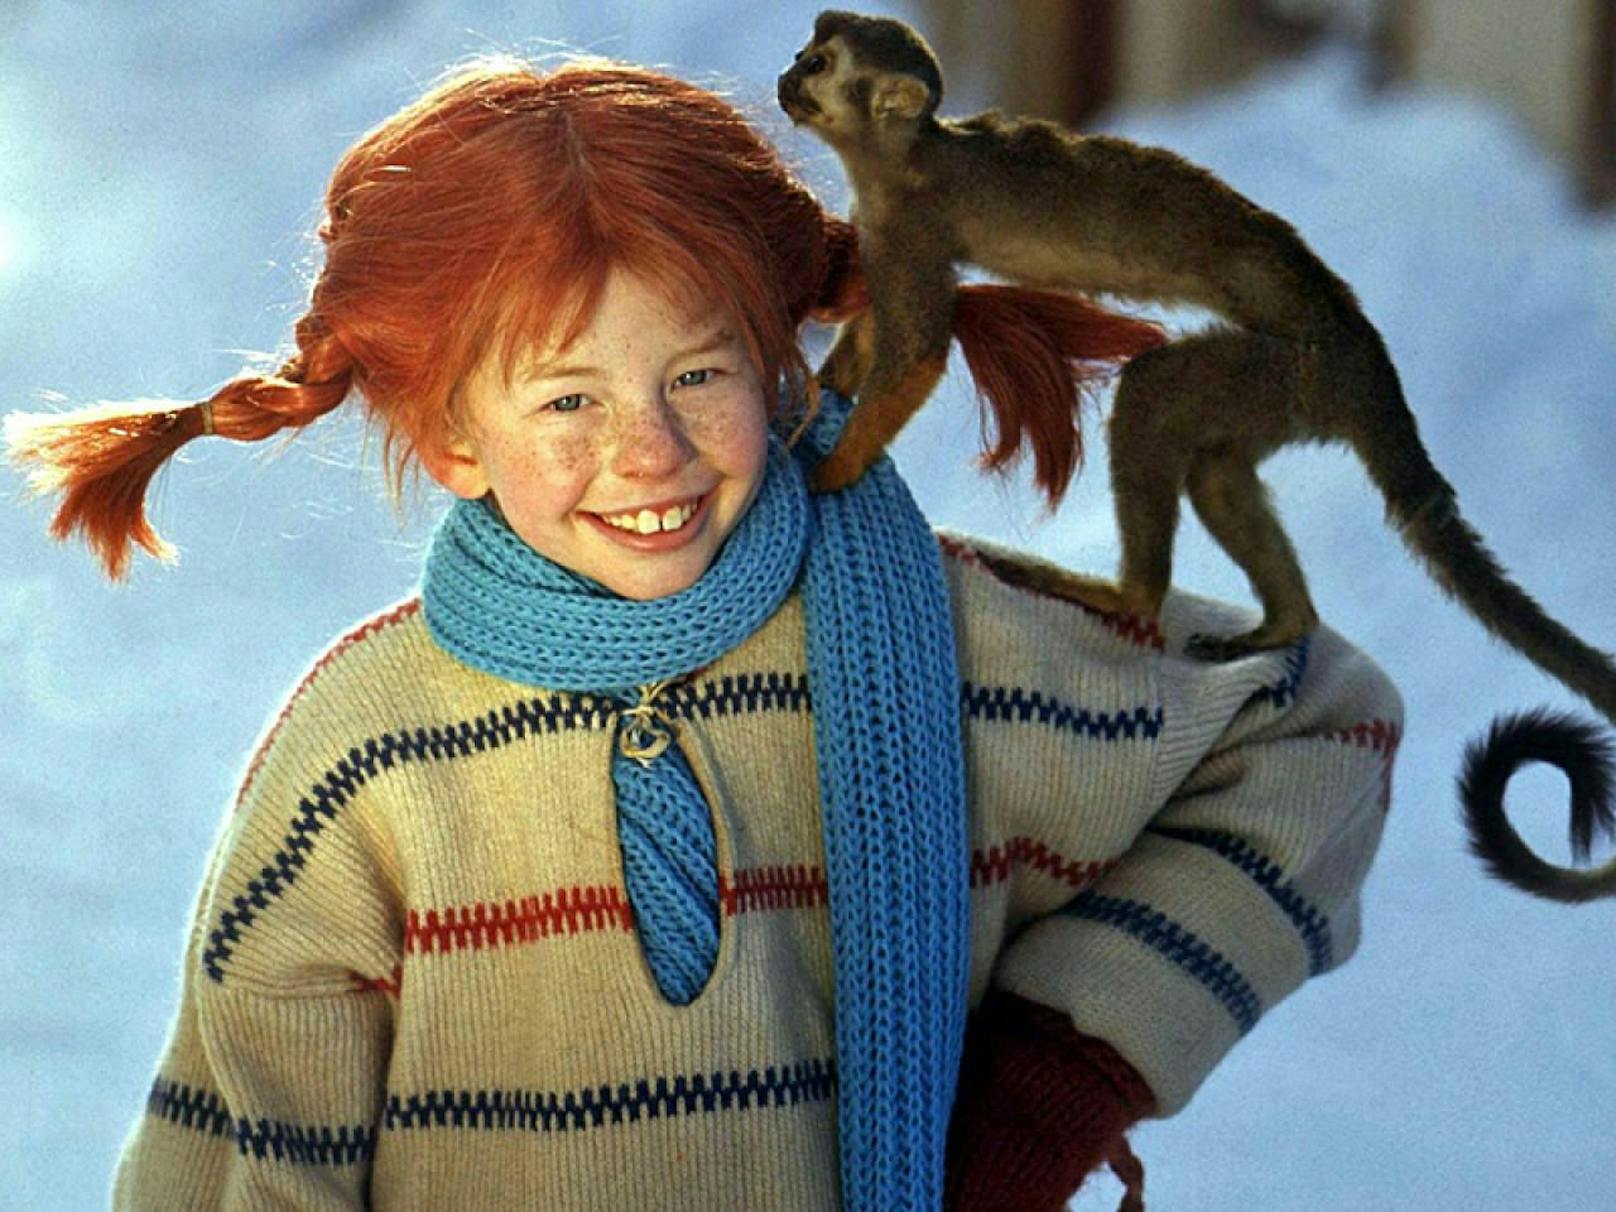 Rote Zöpfe, Sommersprossen und ein freches Grinsen im Gesicht: Im Jahr 1968 feierte Pippi ihre Premiere auf der Kinoleinwand. (c) Einhorn Film